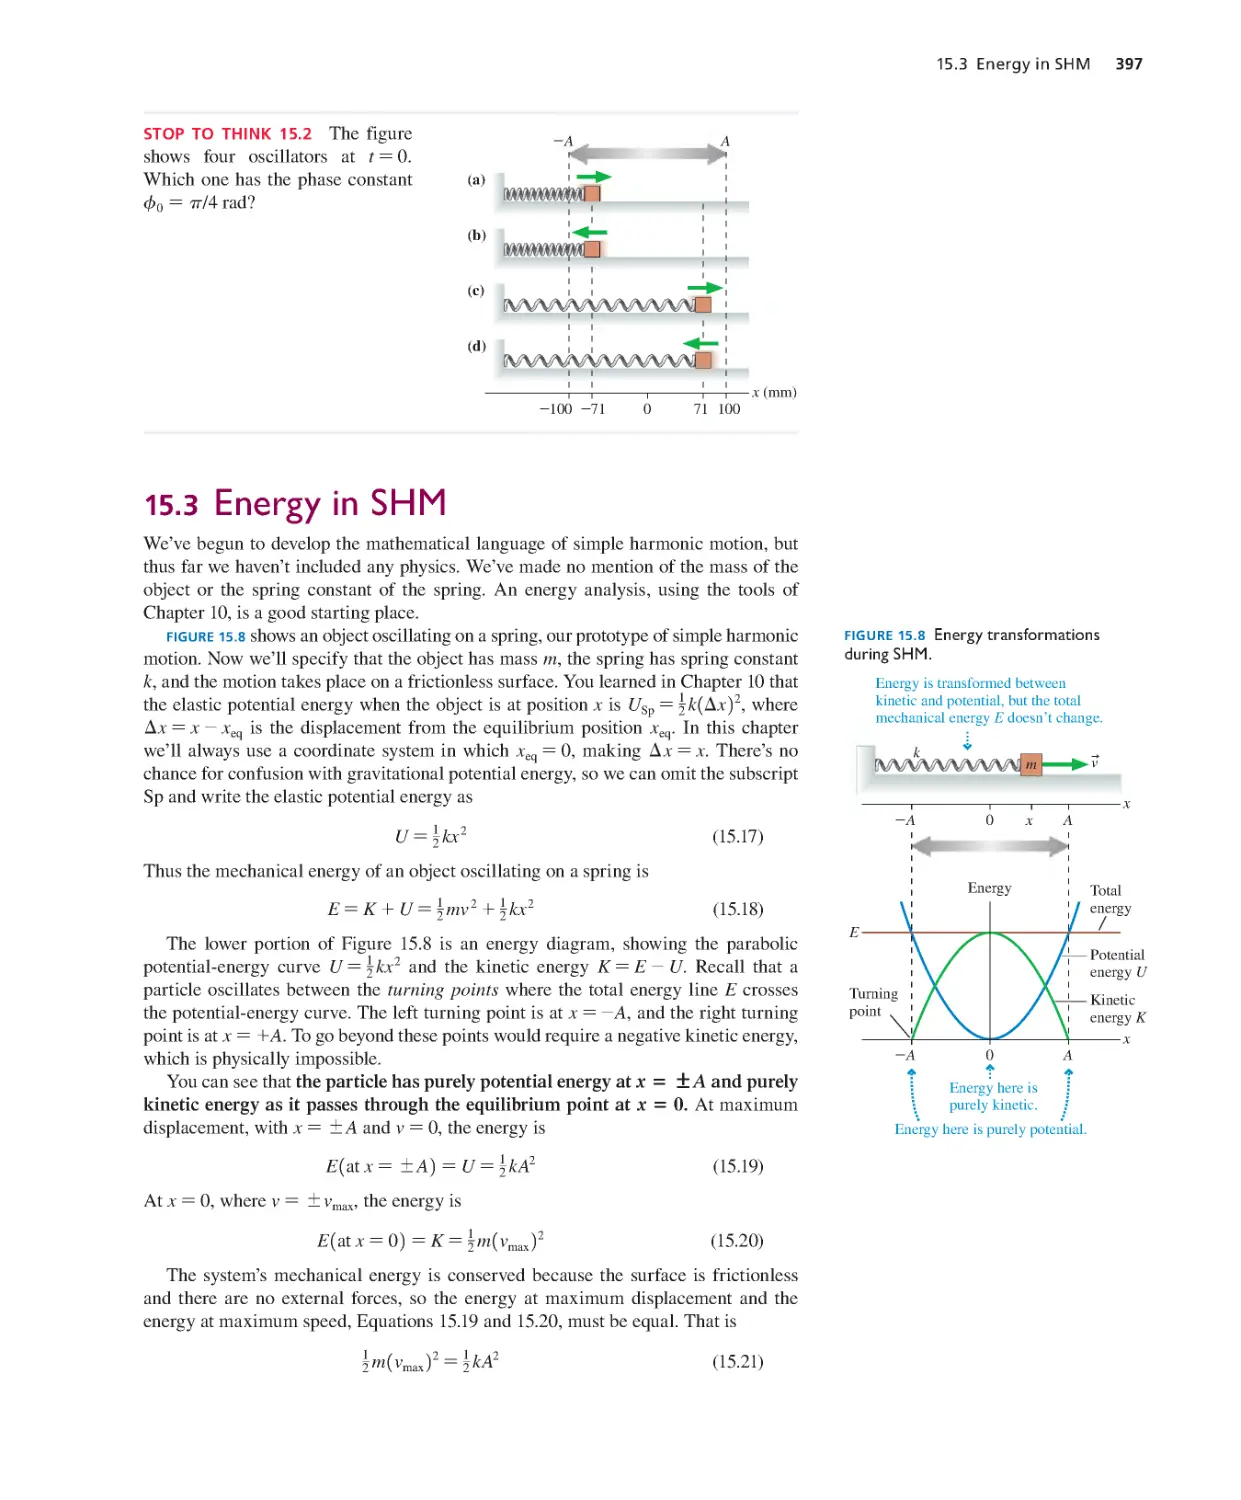 15.3. Energy in SHM